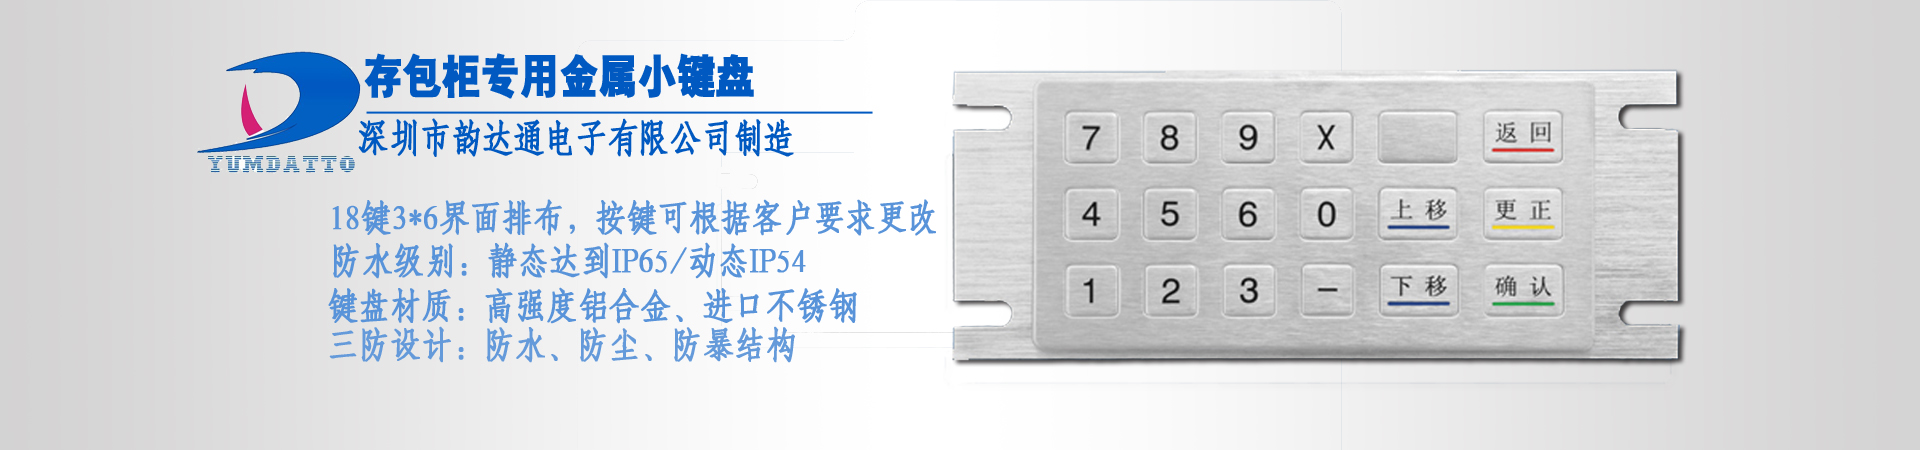 语音密码键盘 语音密码键盘在哪里购买好 深圳语音密码键盘价钱  广东深圳语音密码键盘